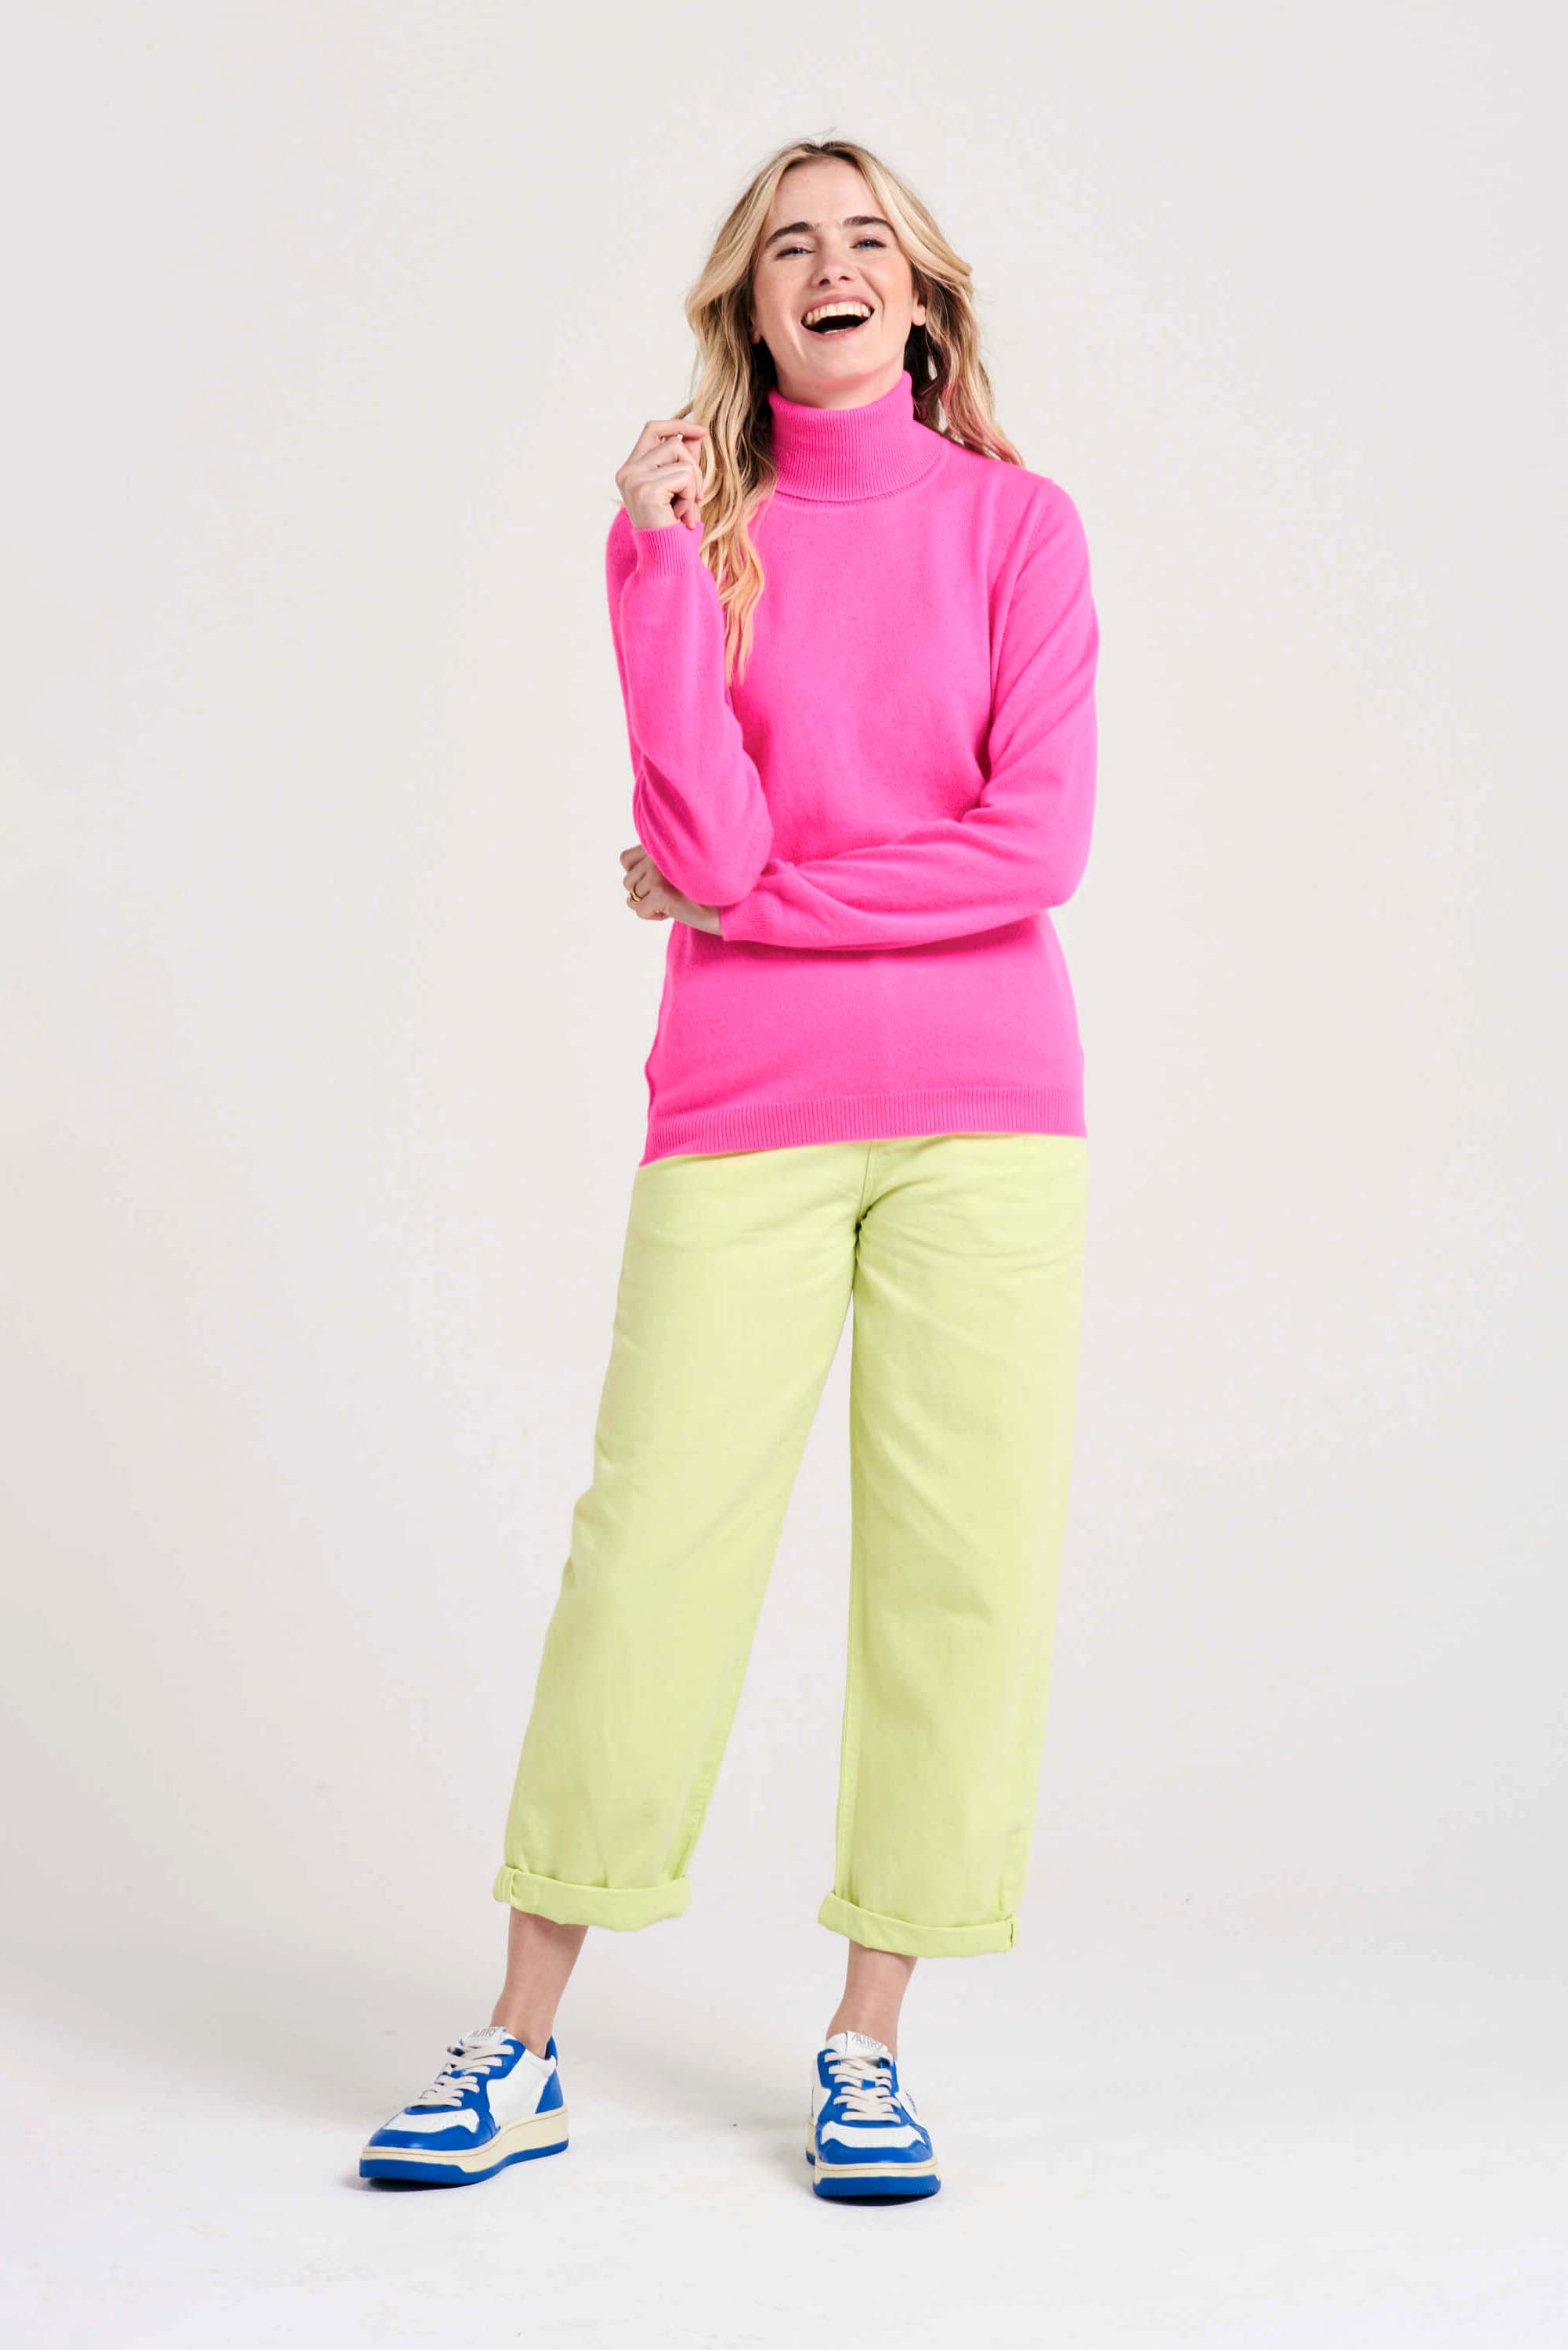 Blonde female model wearing Jumper1234 hot pink cashmere roll neck